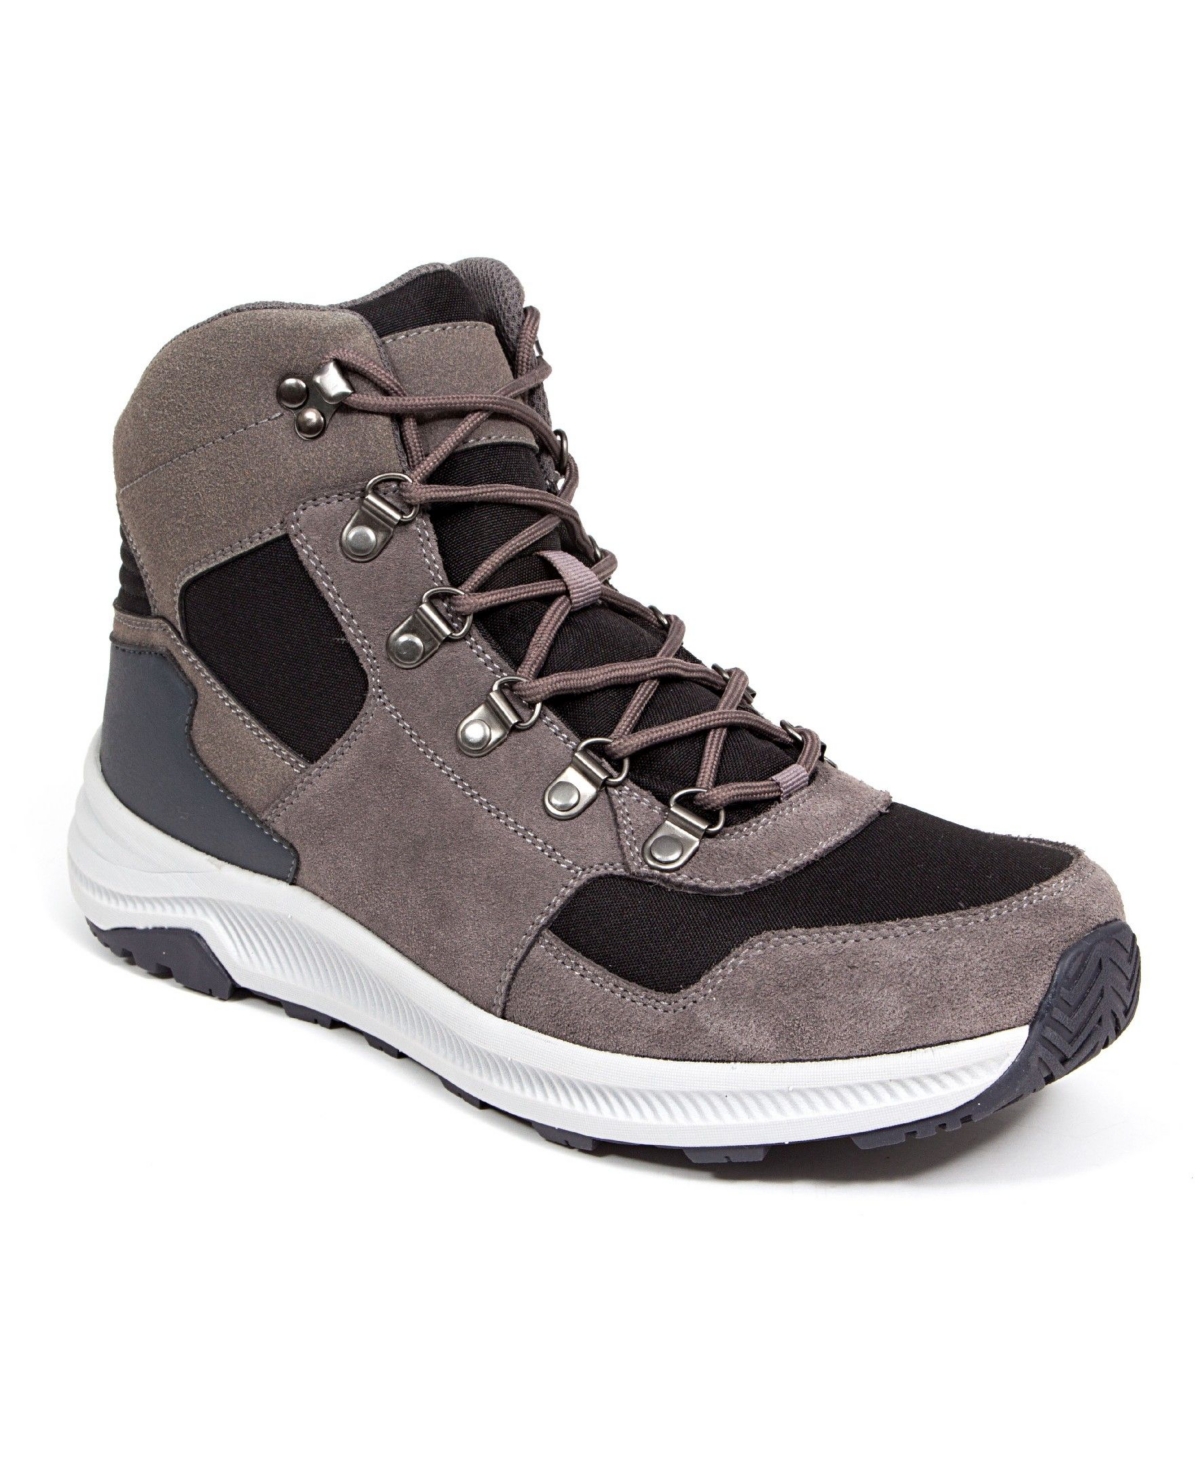 Deer Stags Men's Peak Comfort Casual Hybrid Hiker High Top Sneaker Boots Men's Shoes